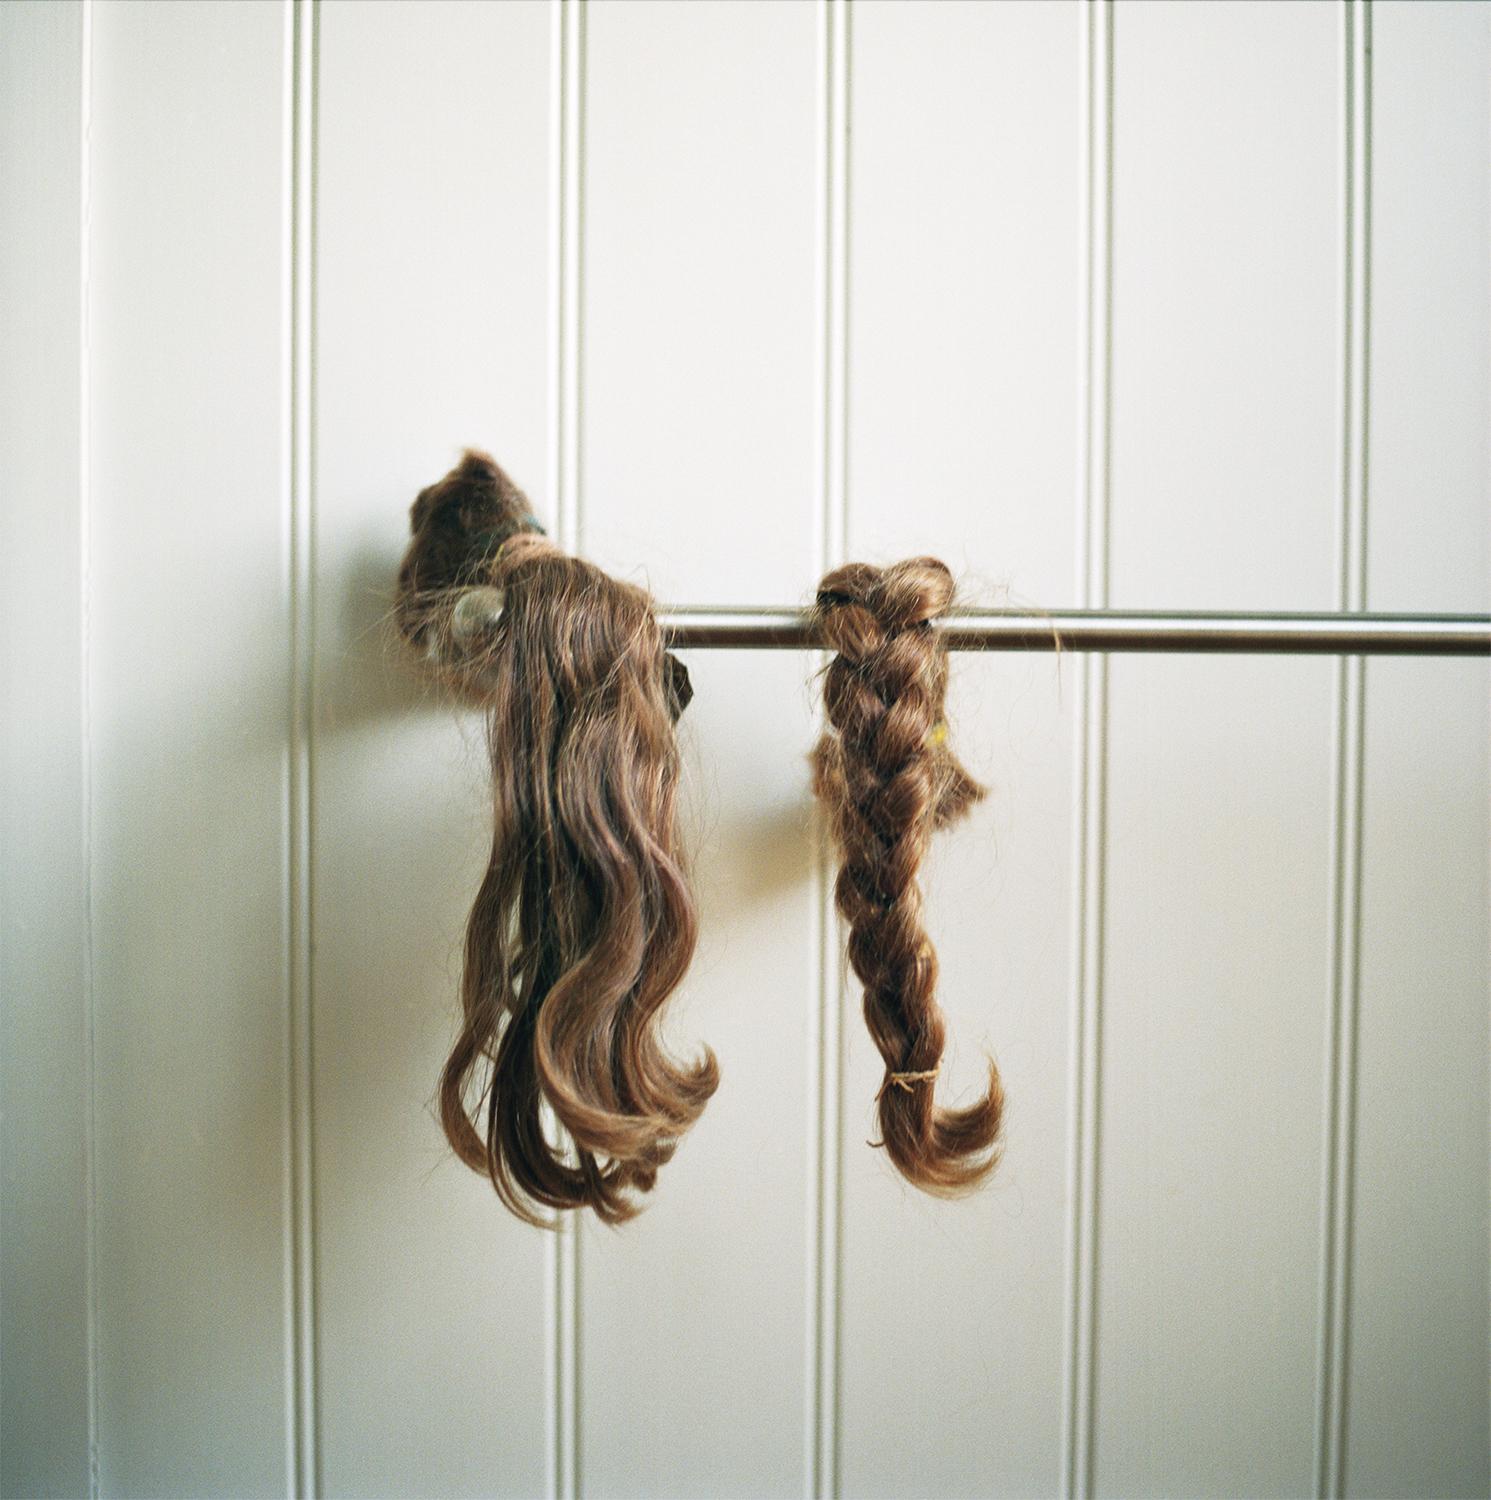 Siri Kaur Portrait Photograph - Hair